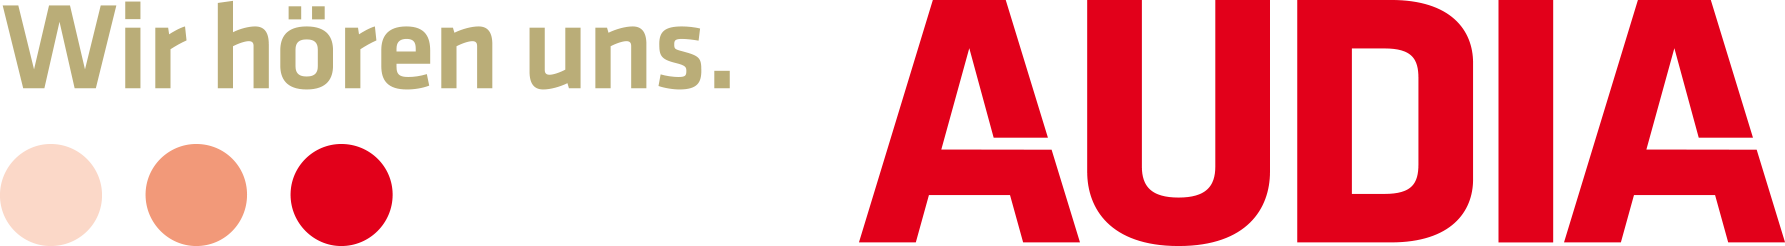 audia_logo